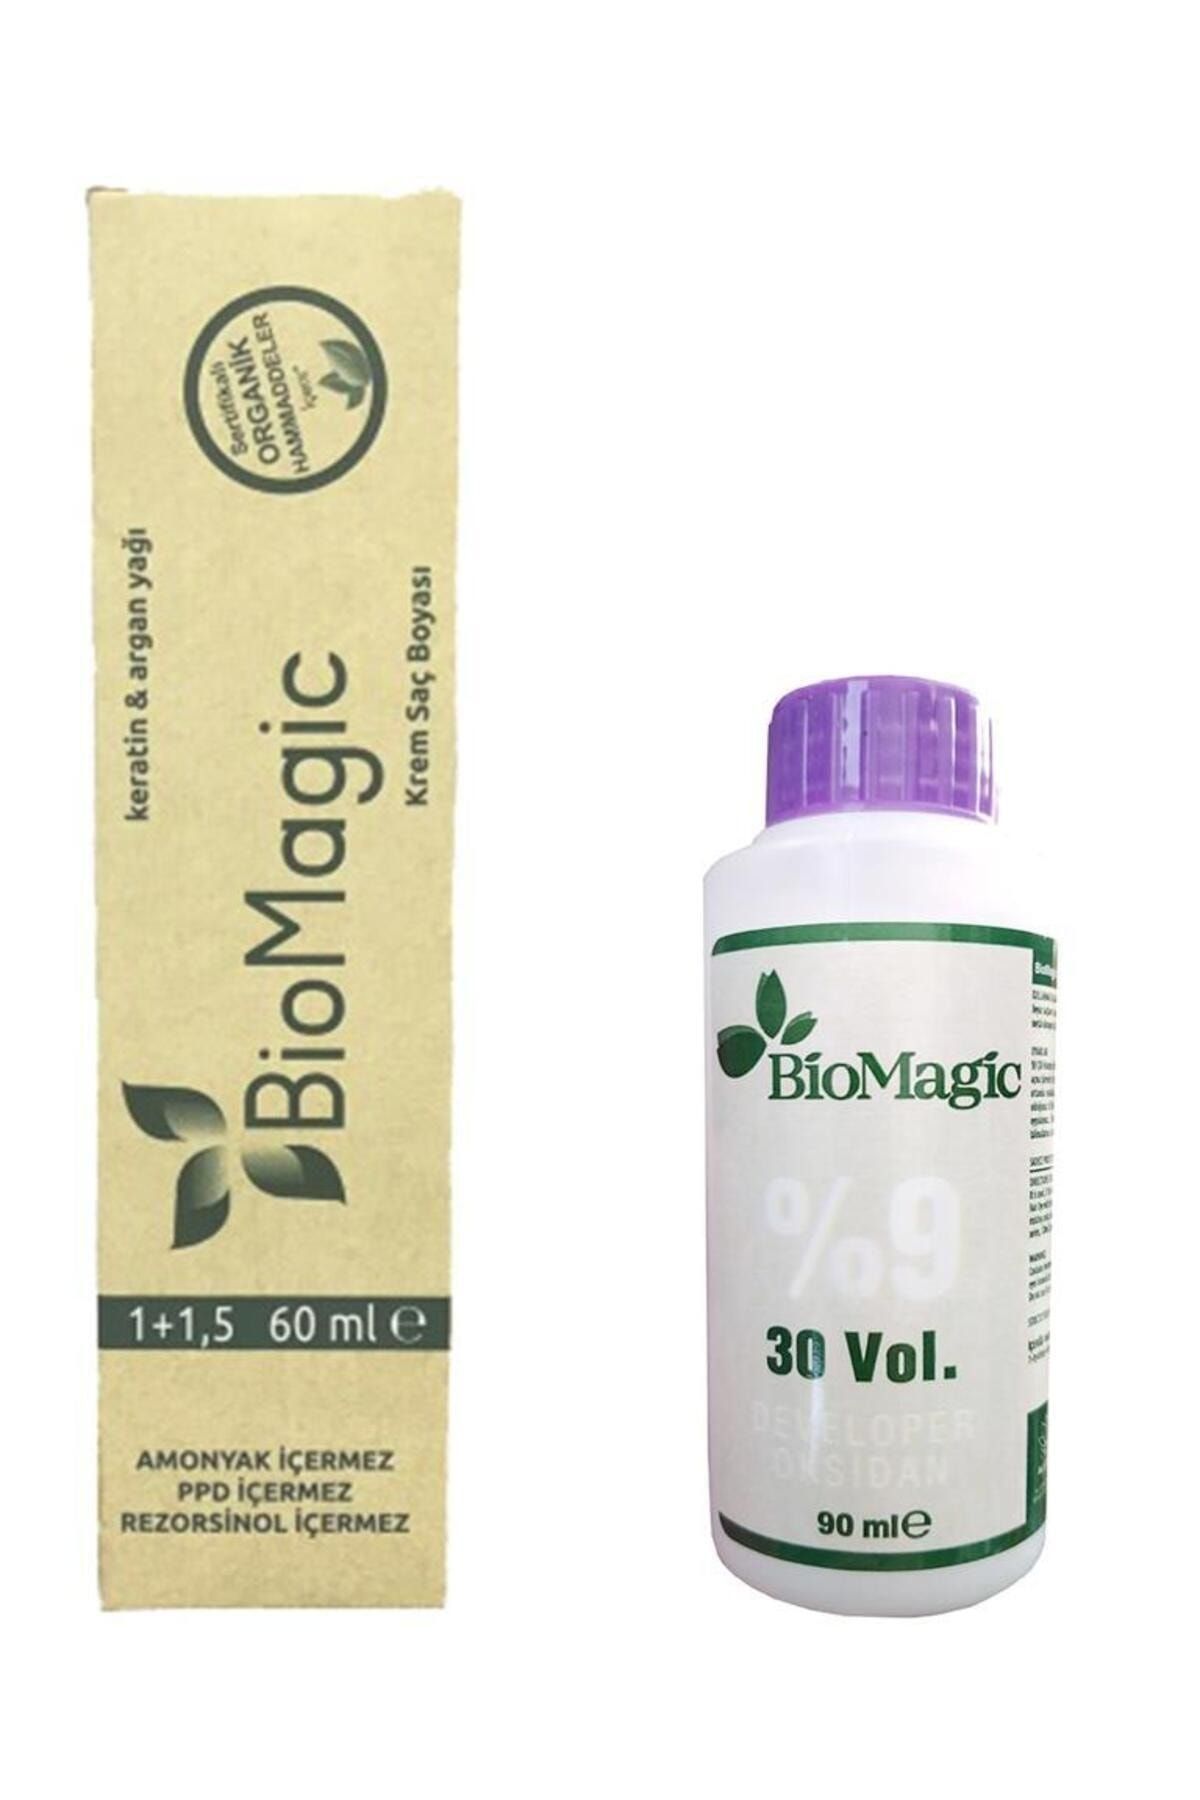 BioMagic Gri / Biomagic Saç Boyası